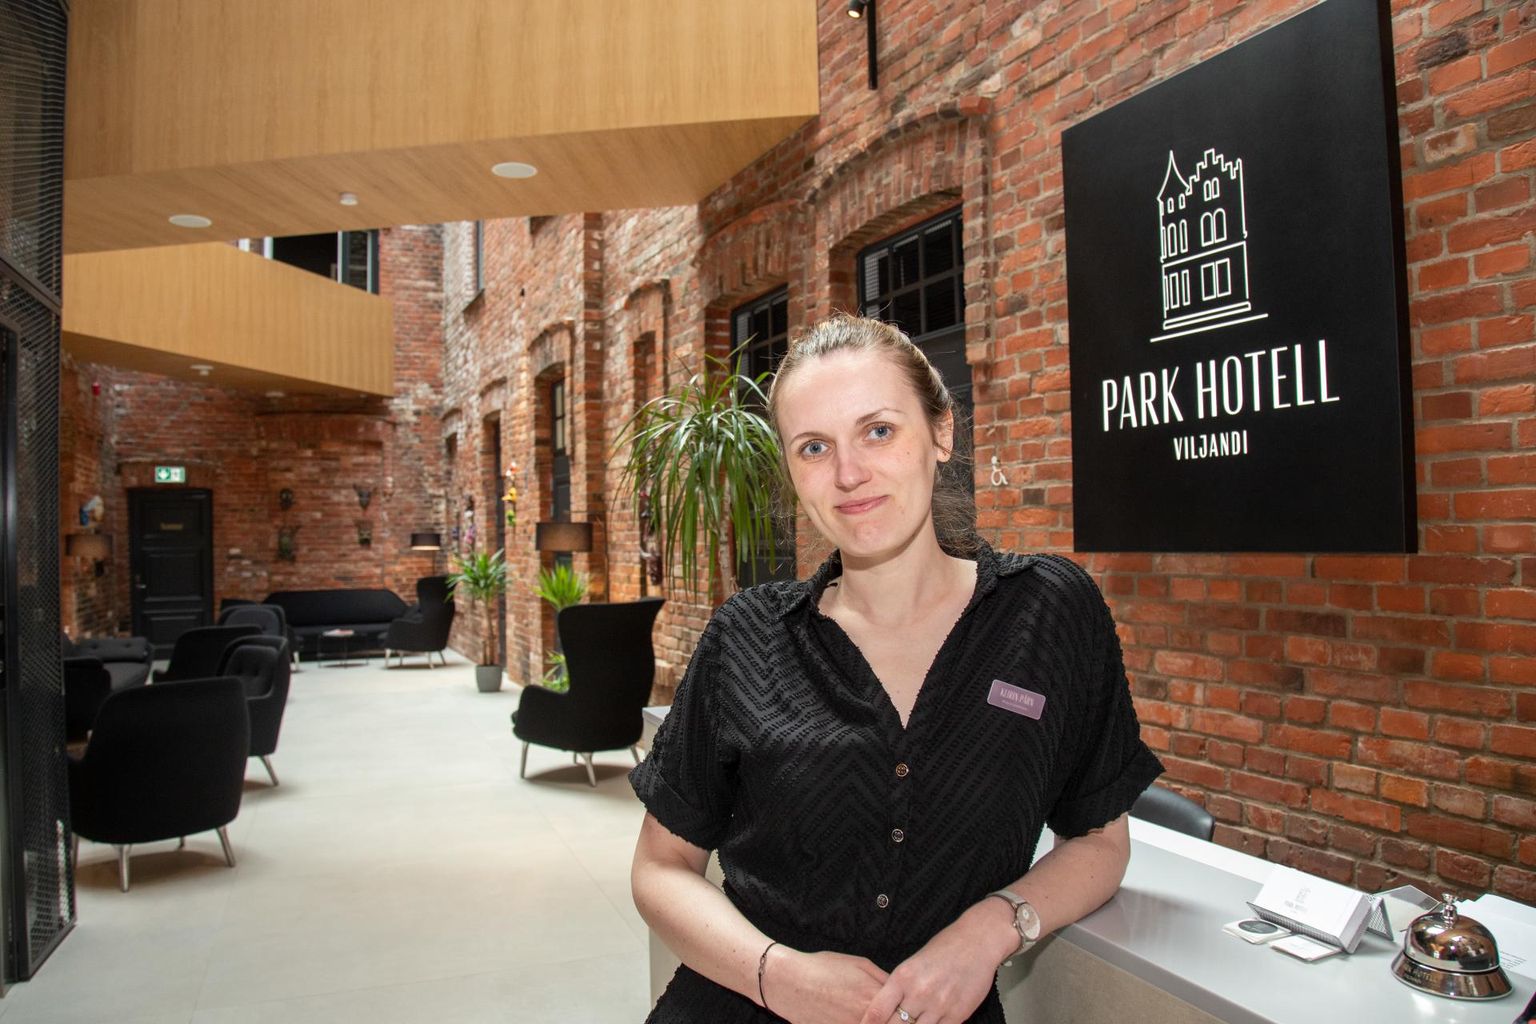 Park Hotell Viljandi müügi- ja marketingijuht Keirin Pärn ütles, et selle suve pärimusmuusika festivaliks soovisid kliendid tube broneerida juba eelmise aasta peo ajal.